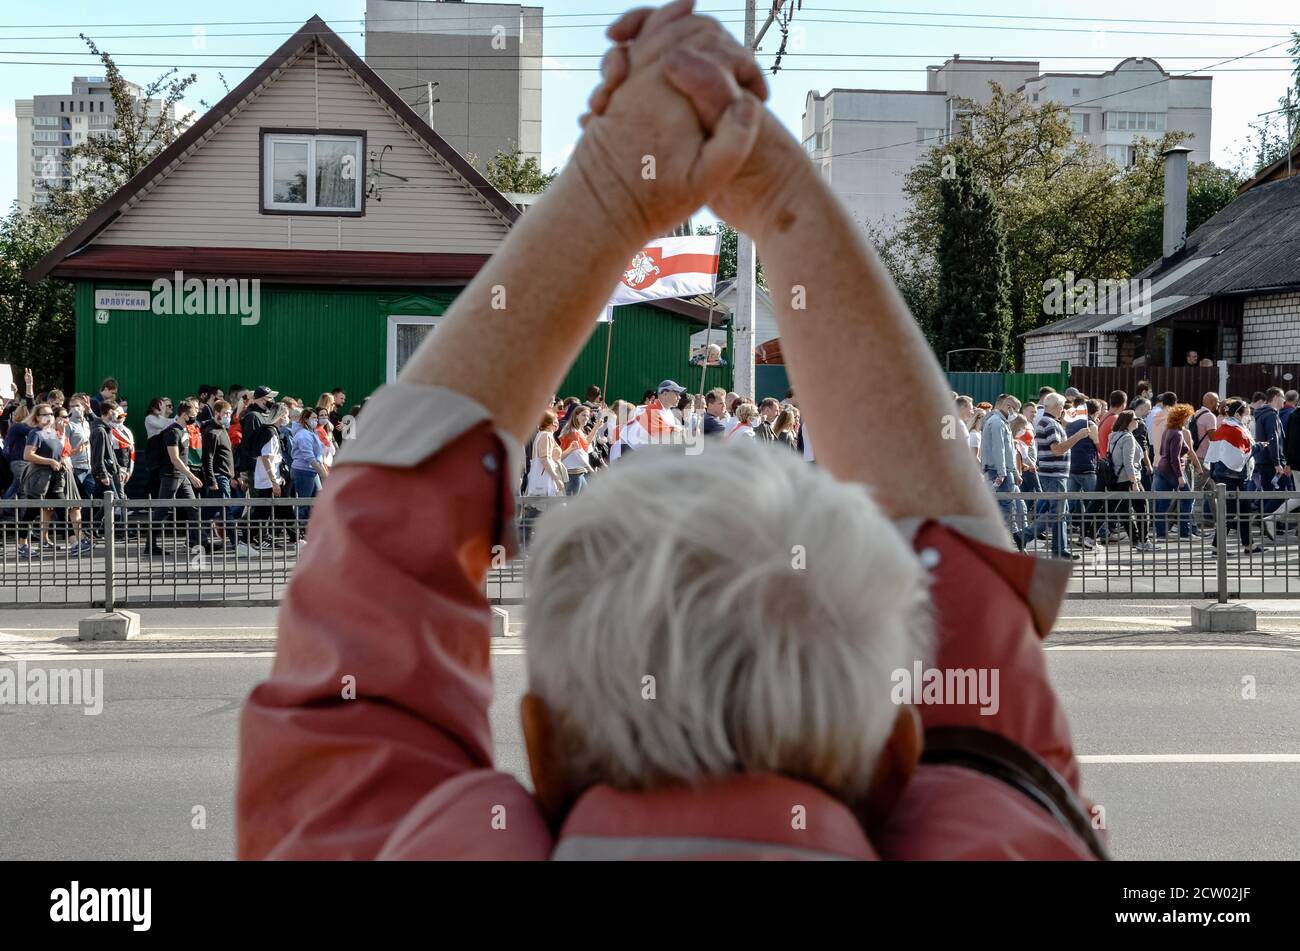 Minsk, Bielorrusia - 13 de septiembre de 2020: El pueblo bielorruso participa en protestas pacíficas después de las elecciones presidenciales en Bielorrusia. Foto de stock